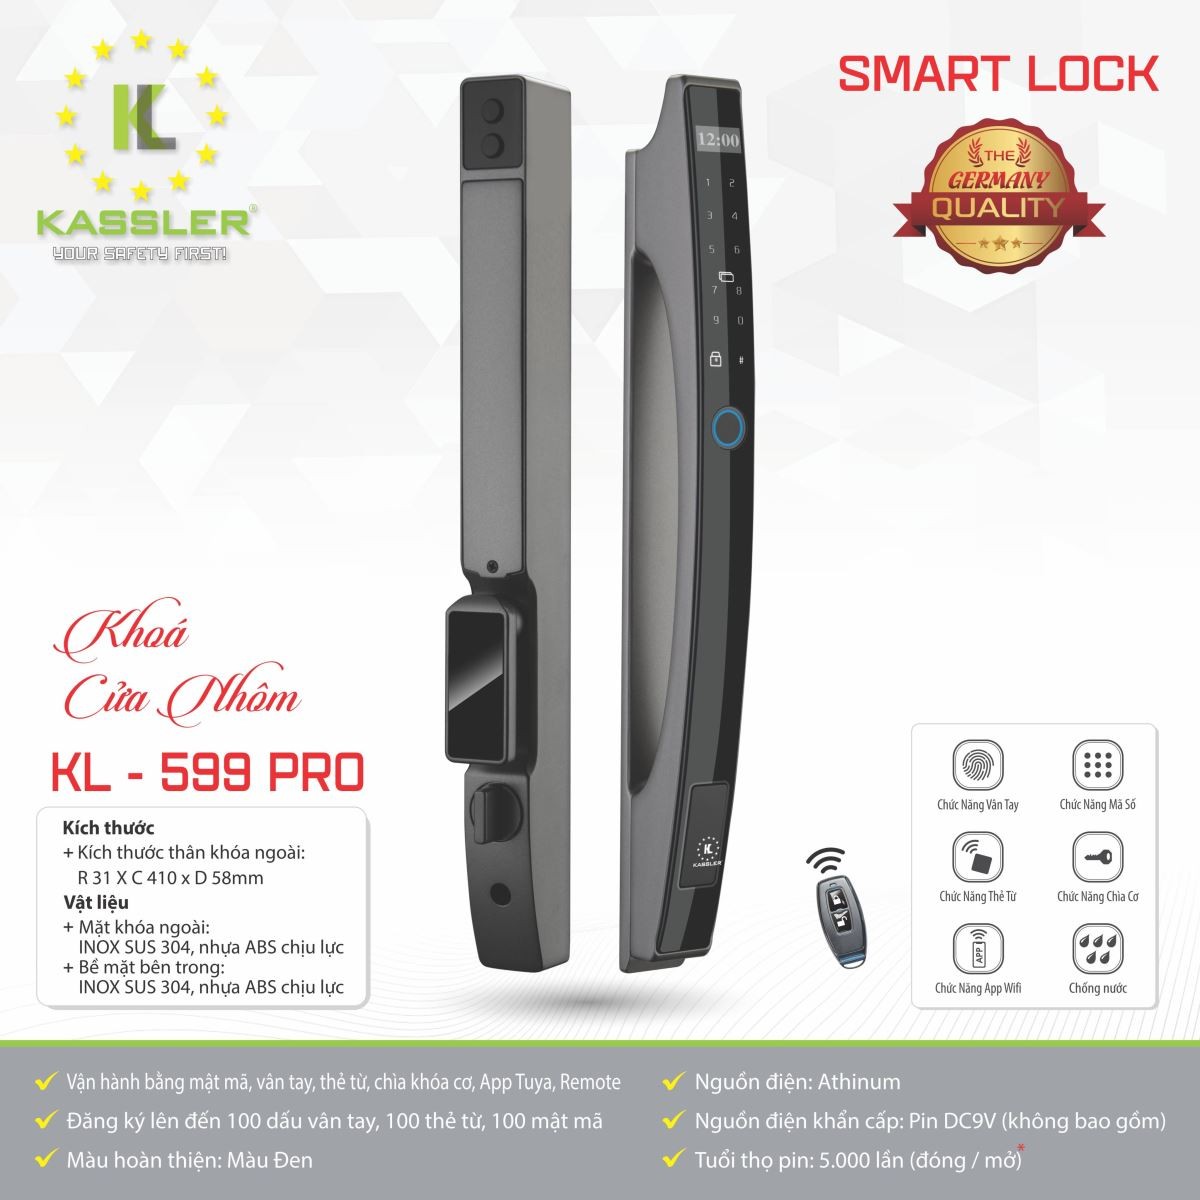 Khóa Cửa Nhôm Kassler KL-599 Pro